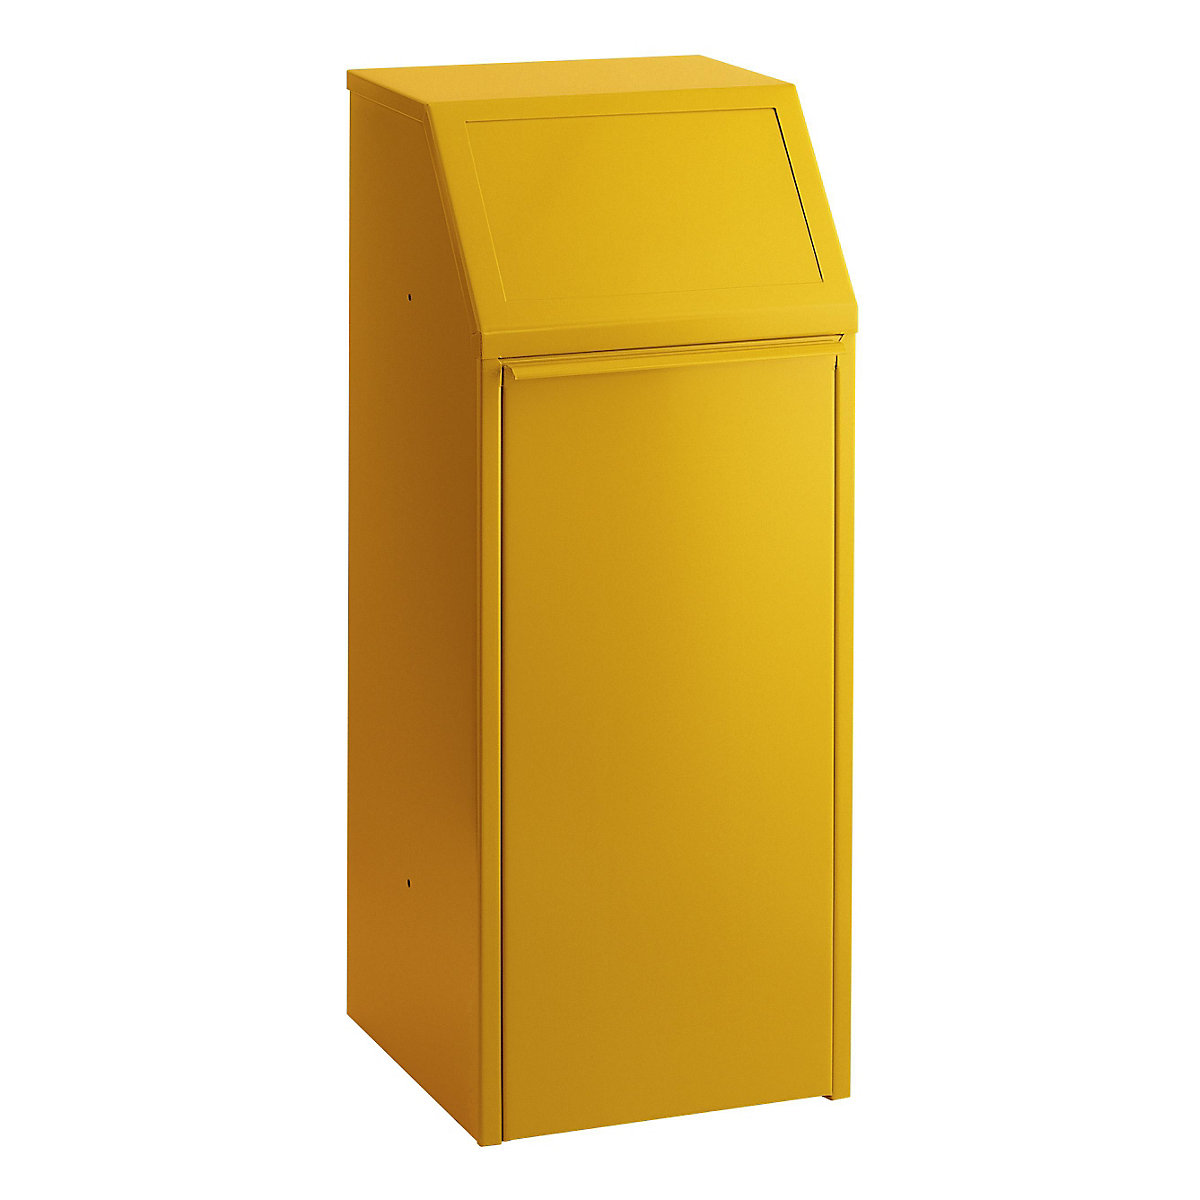 Pojemnik na surowce wtórne, blacha stalowa, poj. 70 l, szer. x wys. x głęb. 408 x 1007 x 405 mm, żółty-5